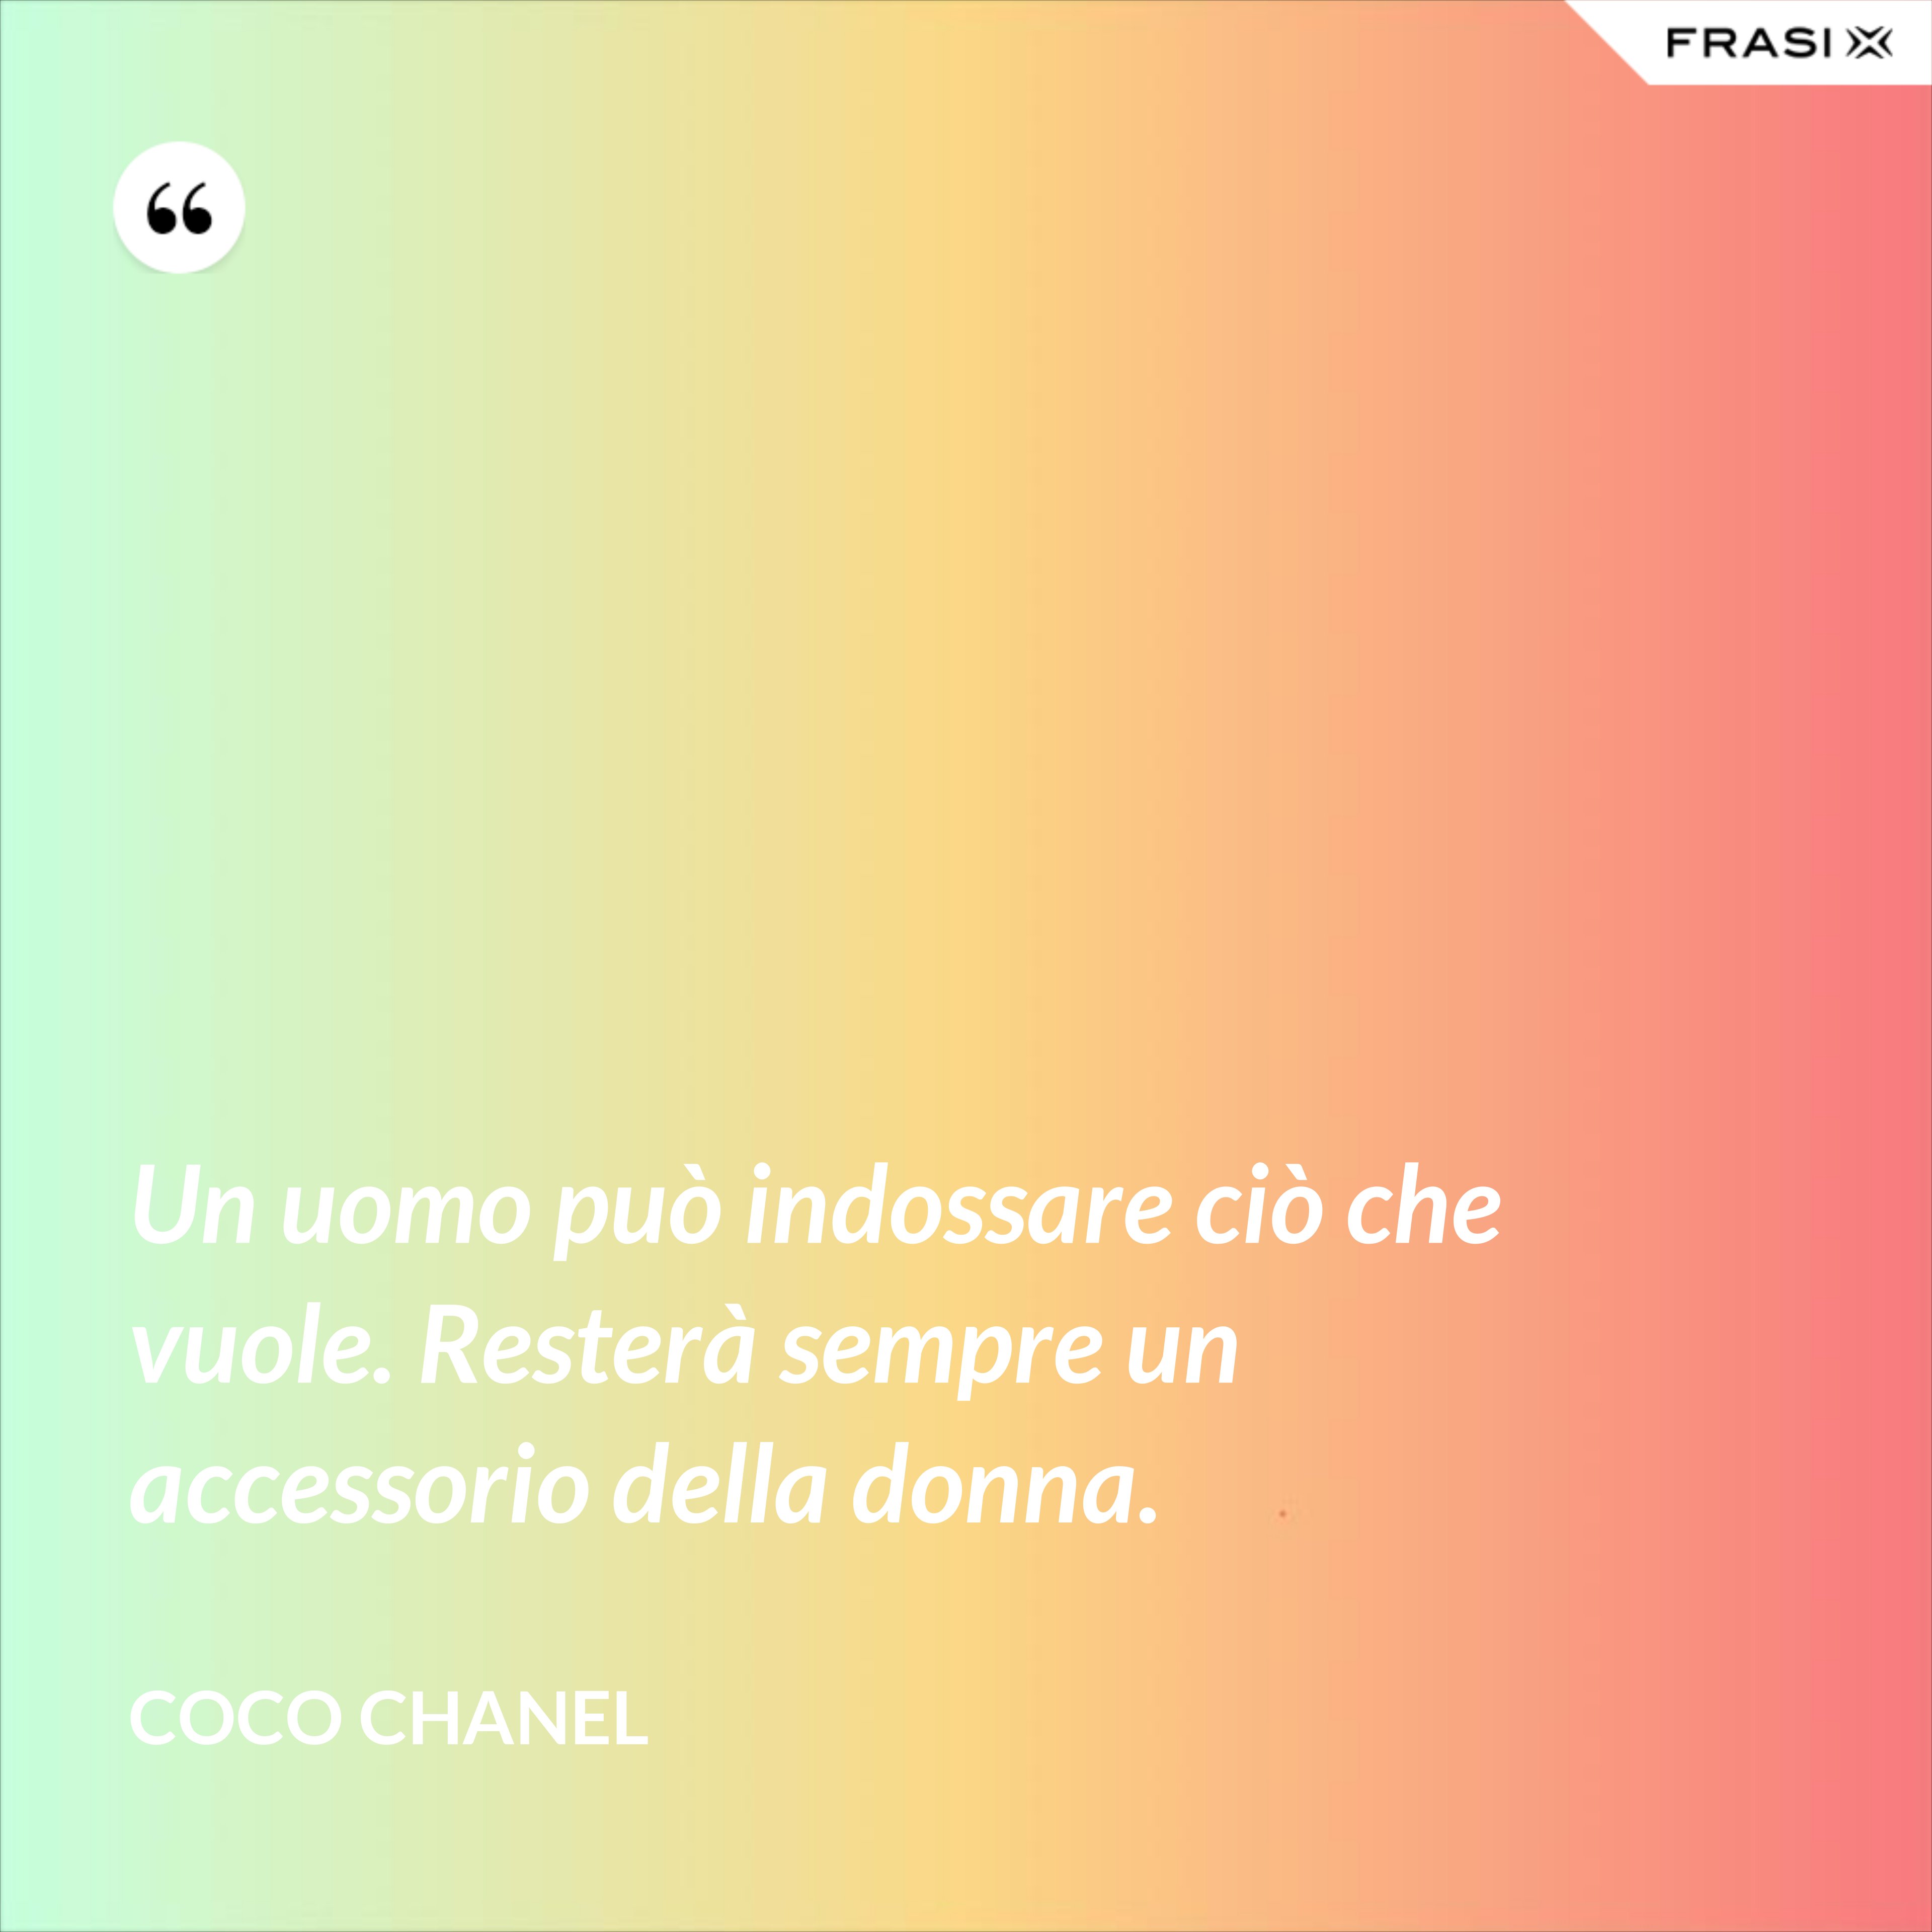 Un uomo può indossare ciò che vuole. Resterà sempre un accessorio della donna. - Coco Chanel